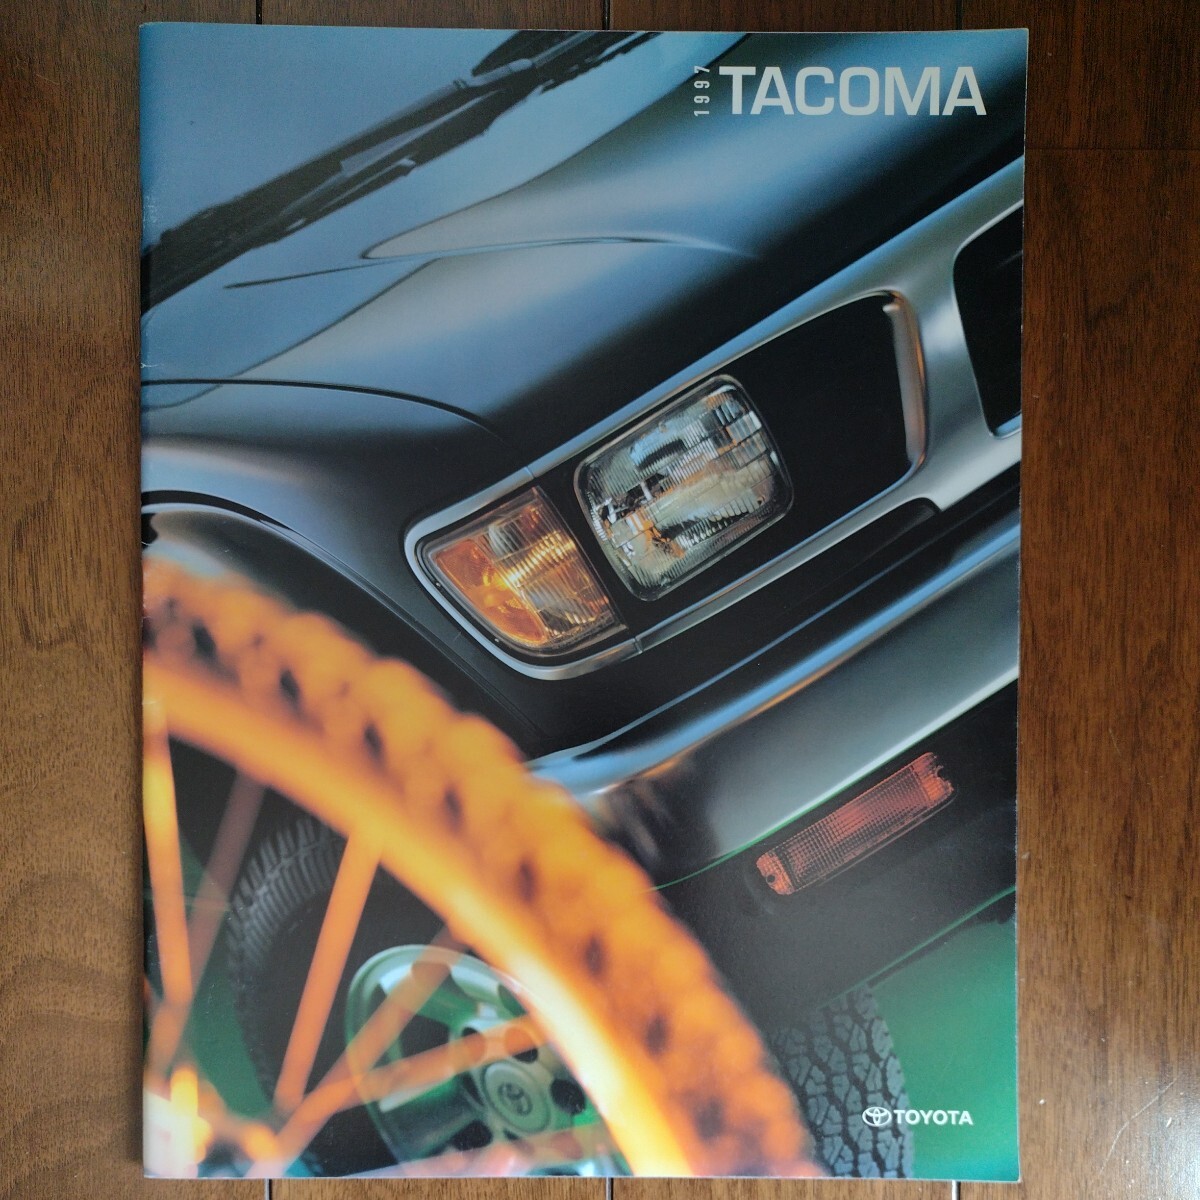  Северная Америка US Toyota Tacoma Tacoma 1997 каталог usdm jdm Mini грузовик Hilux желтохвост высокий Tundra реимпорт высокая скорость иметь свинец America Гаваи 